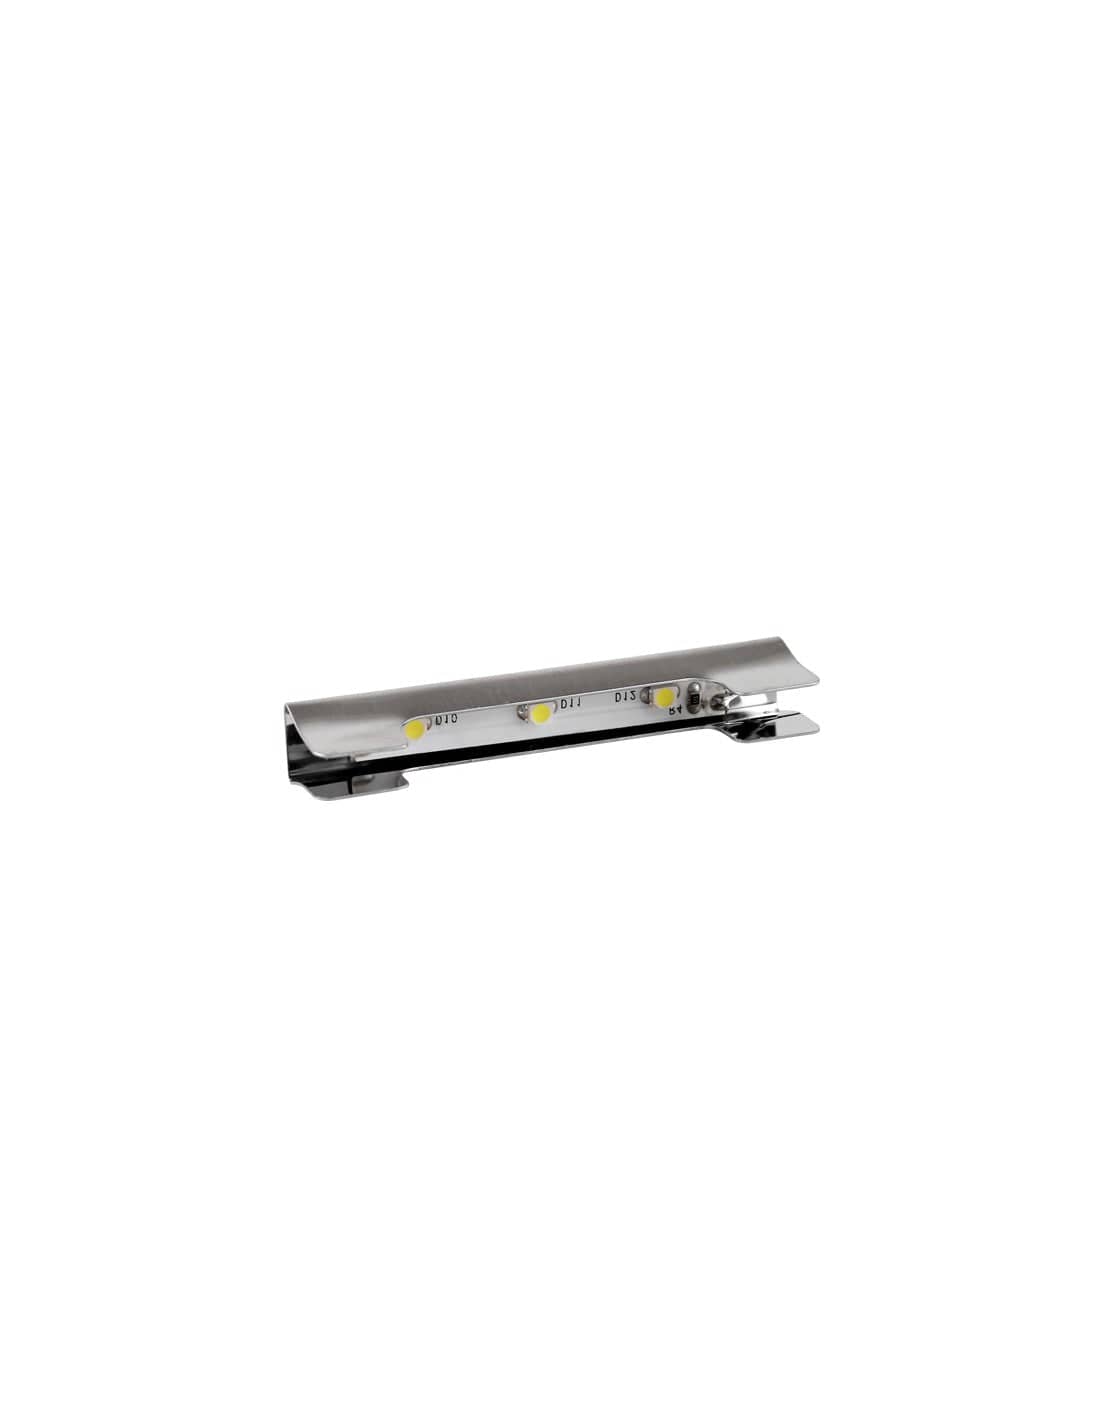 KLIPS - LED metal clip 0.25W Warm White 30K   KLIPS-M-3528-30K-01